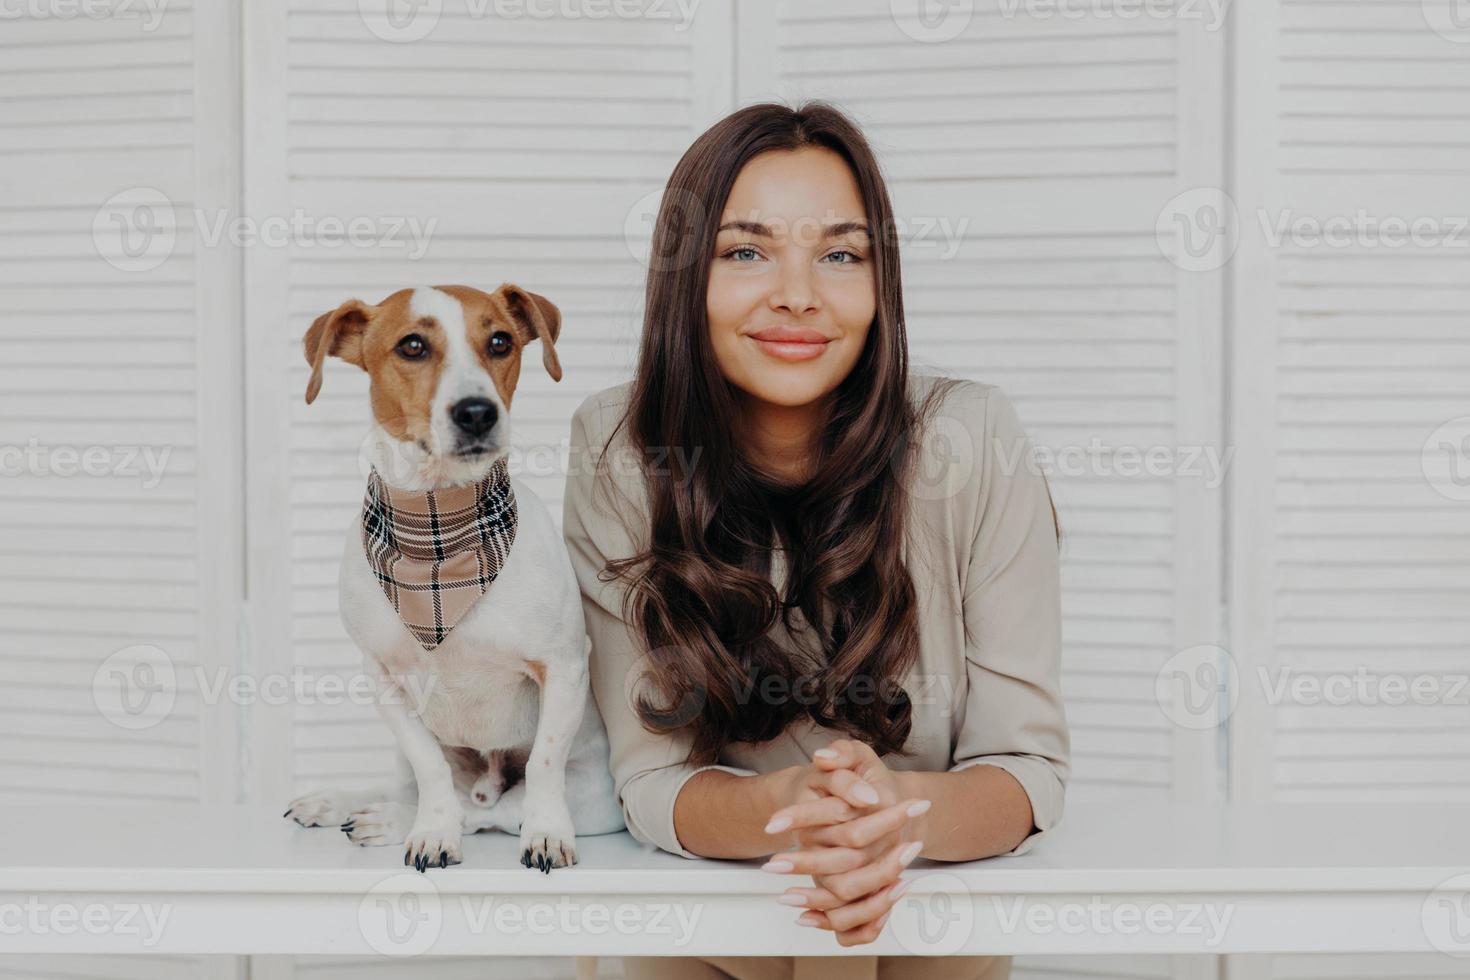 foto van een knappe vrouw met donker haar, brengt vrije tijd door met jack russel terrier, houdt van dieren, heeft een vriendschappelijke relatie met huisdier, poseert samen aan een witte tafel, speelt samen.